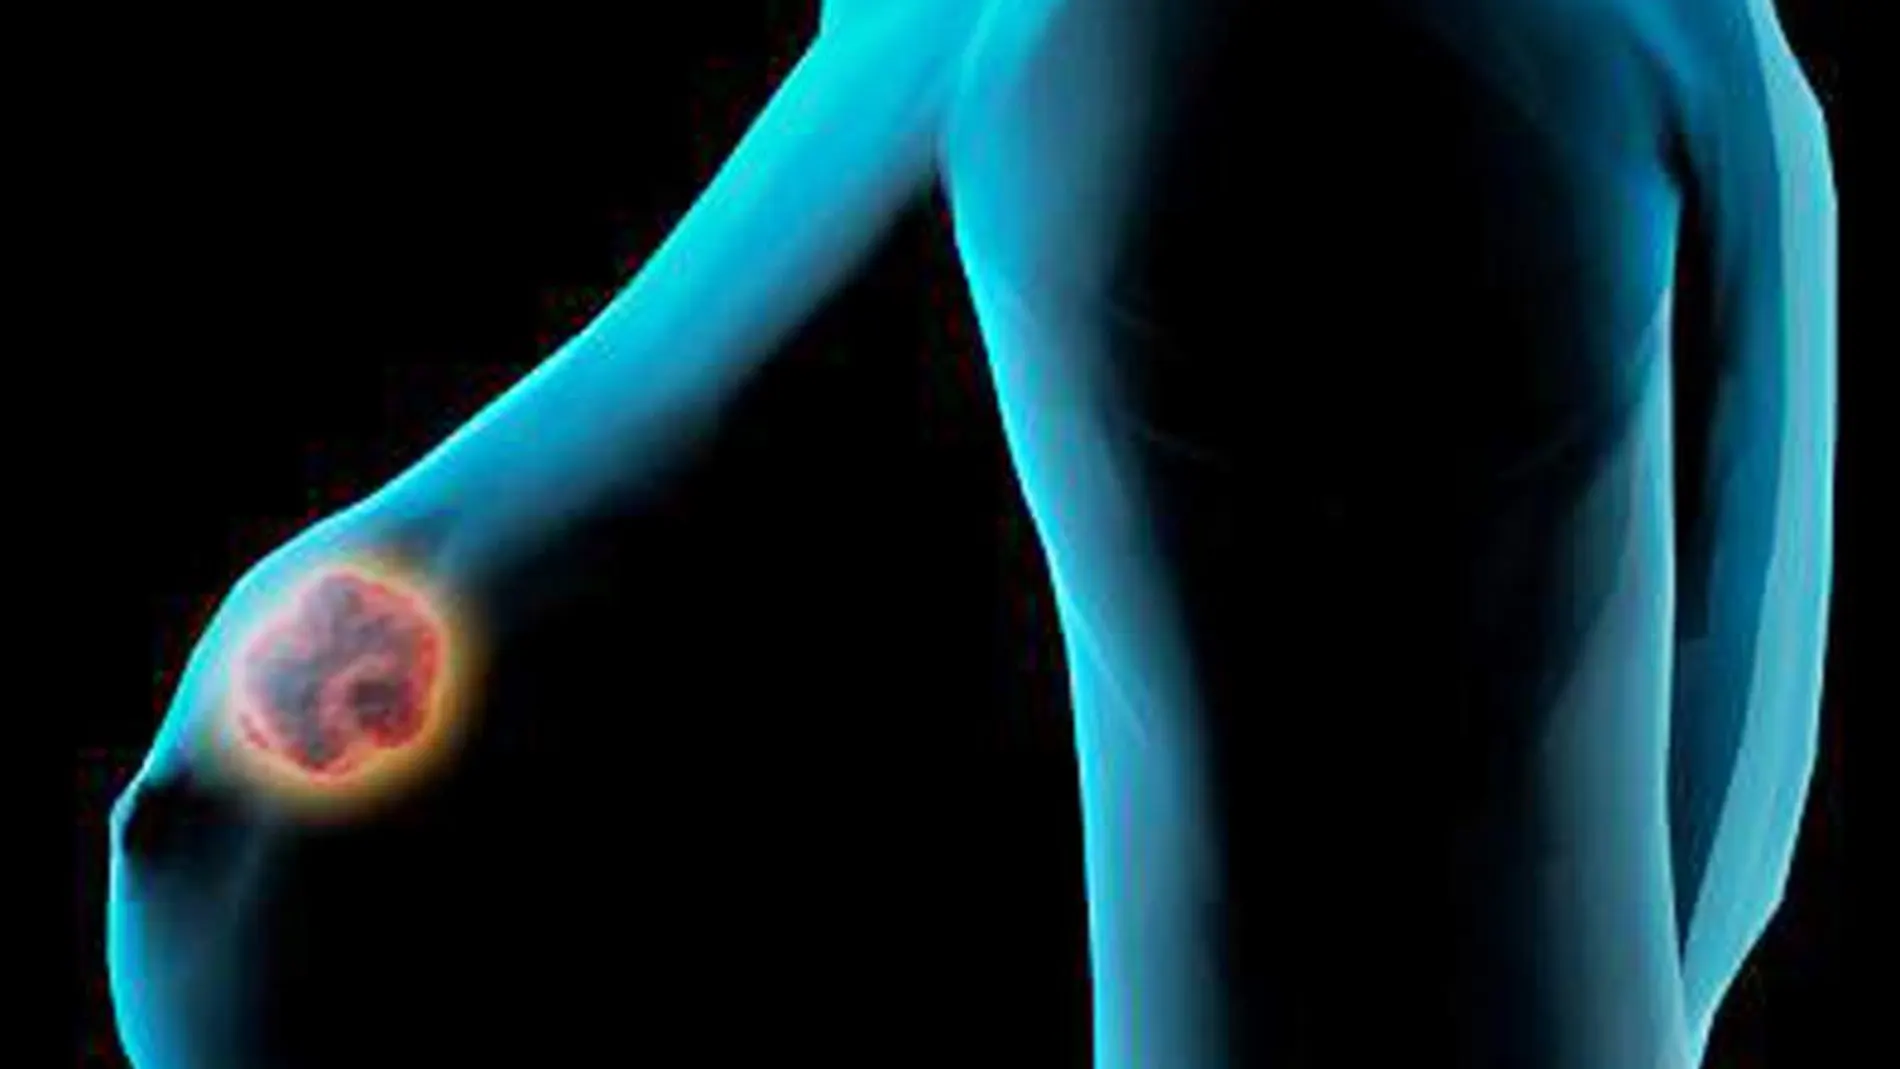 La supervivencia en los casos de cáncer de mama ha mejorado